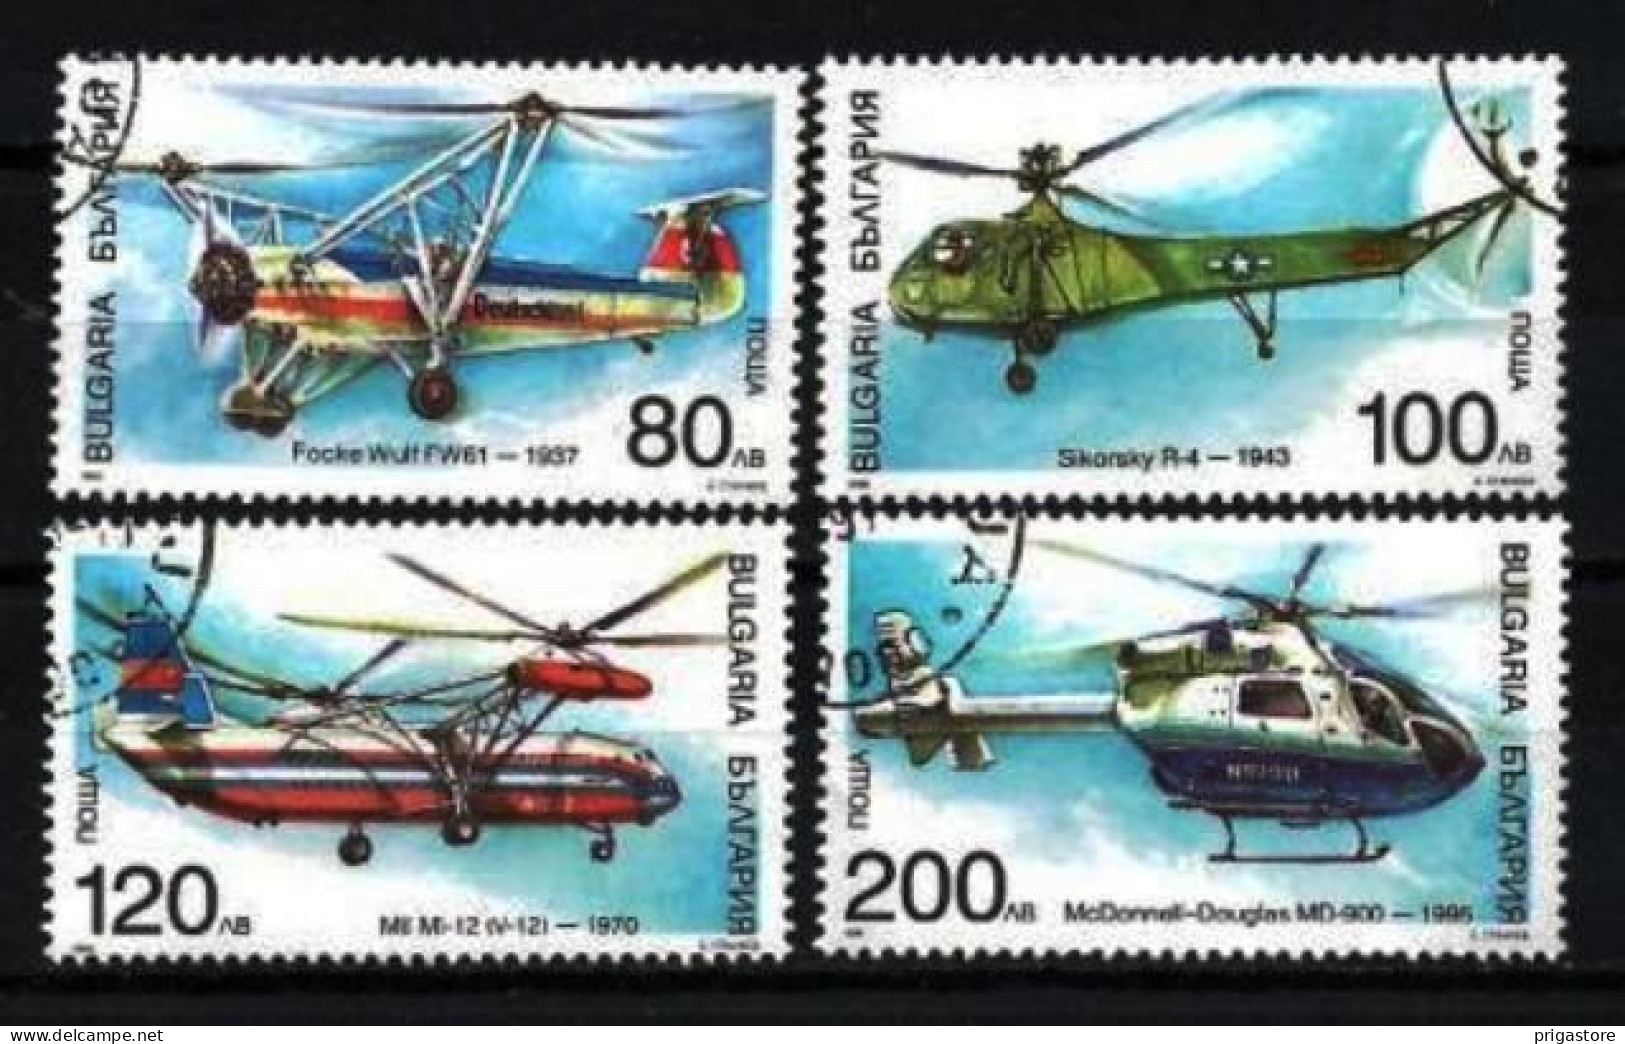 Bulgarie 1998 Avions Hélicoptères (4) Yvert N° 3783 à 3786 Oblitéré Used - Gebraucht